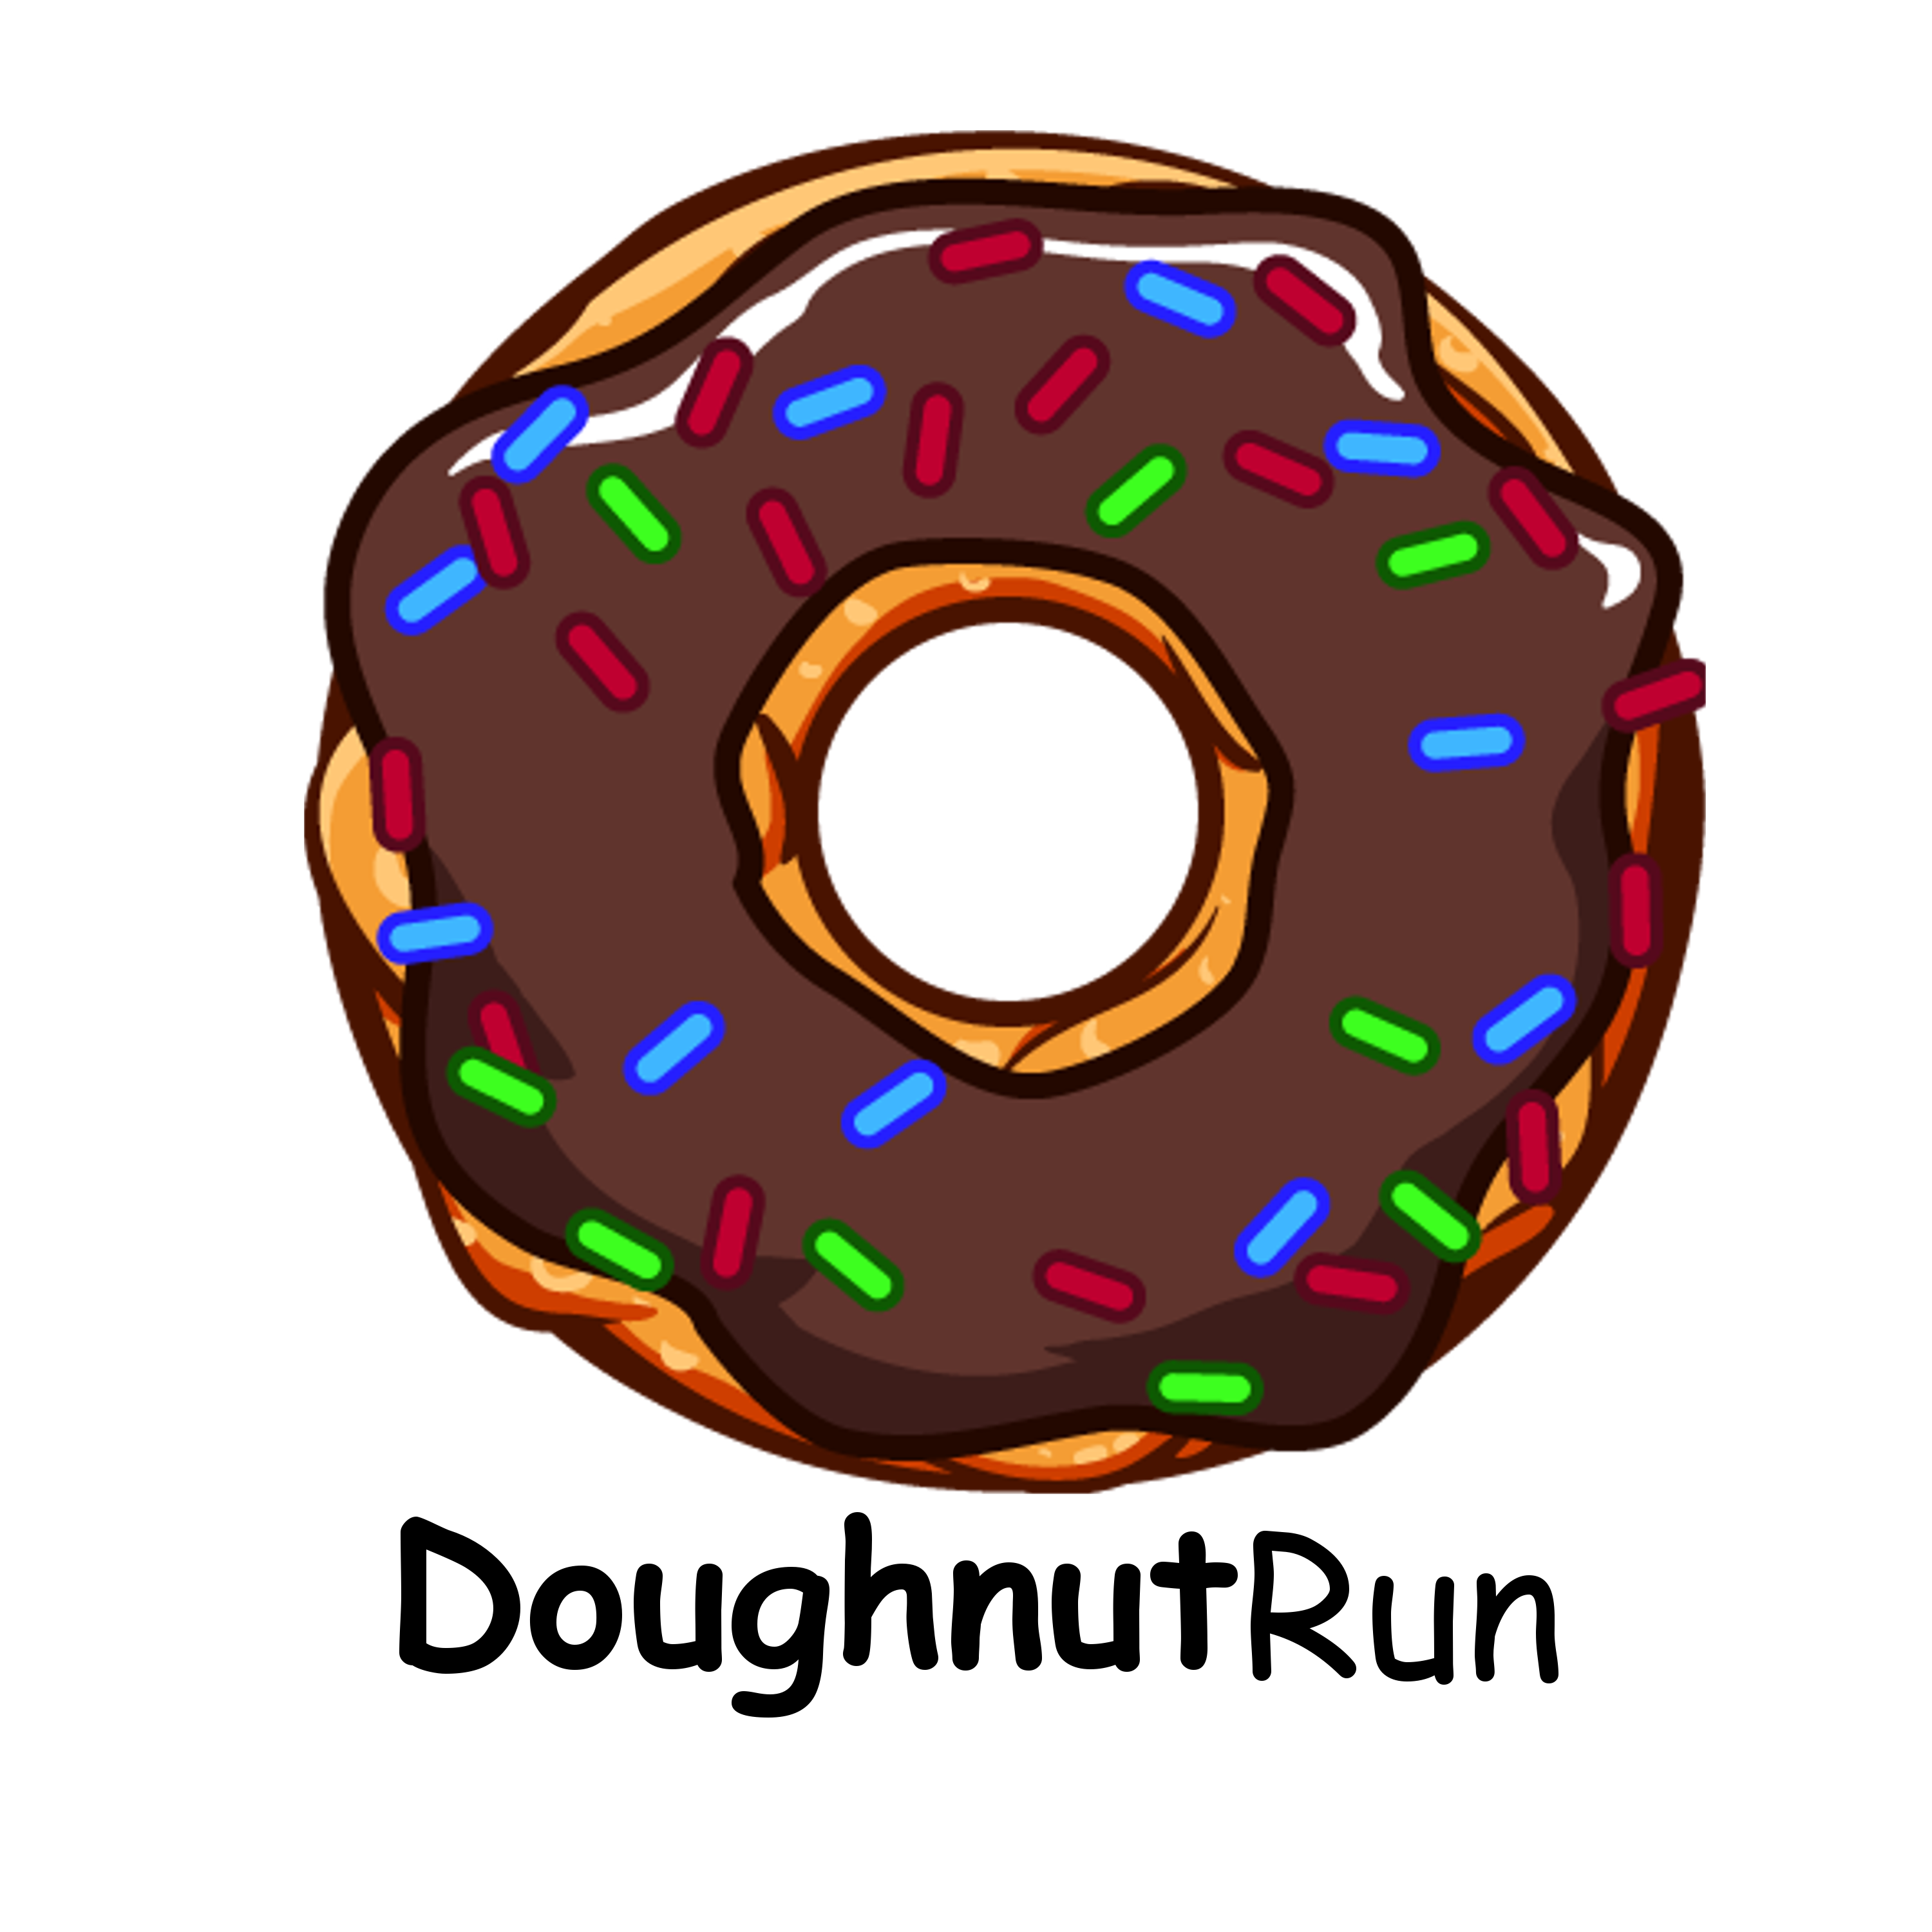 DoughnutRun